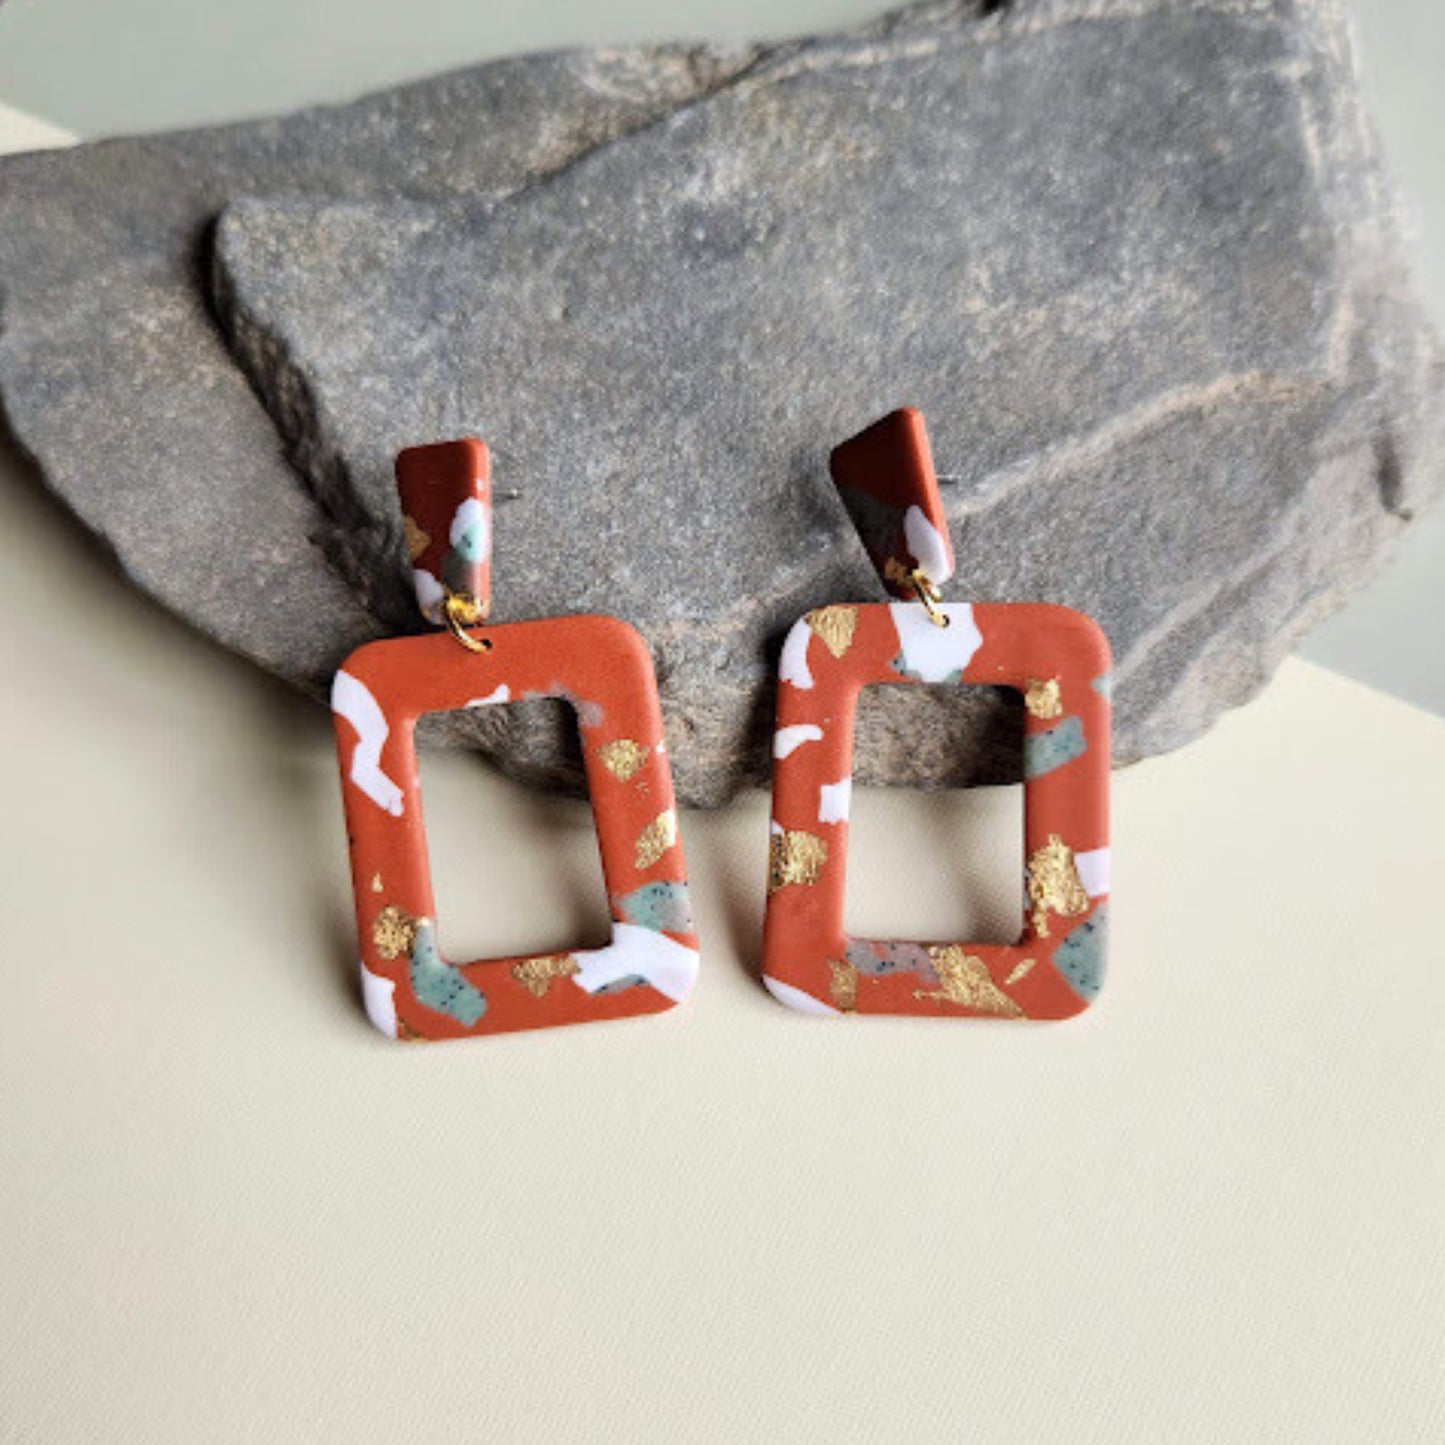 The Dannemart Polymer Clay Dangle Earrings in Terracotta